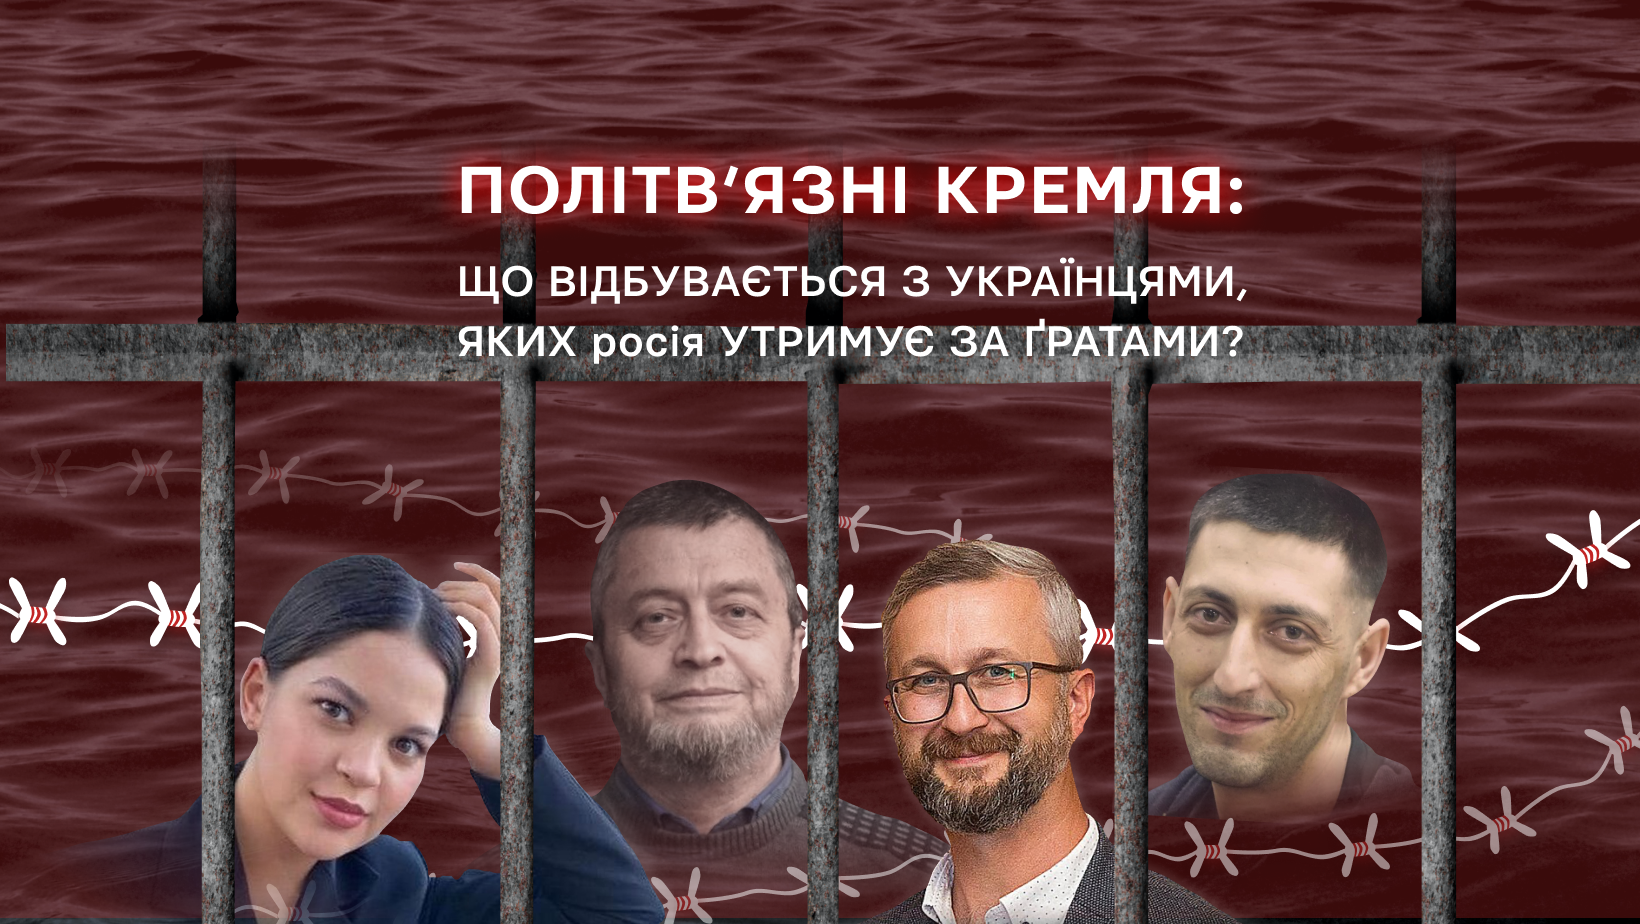 Політв’язні Кремля: що відбувається з українцями, яких росія утримує за ґратами?